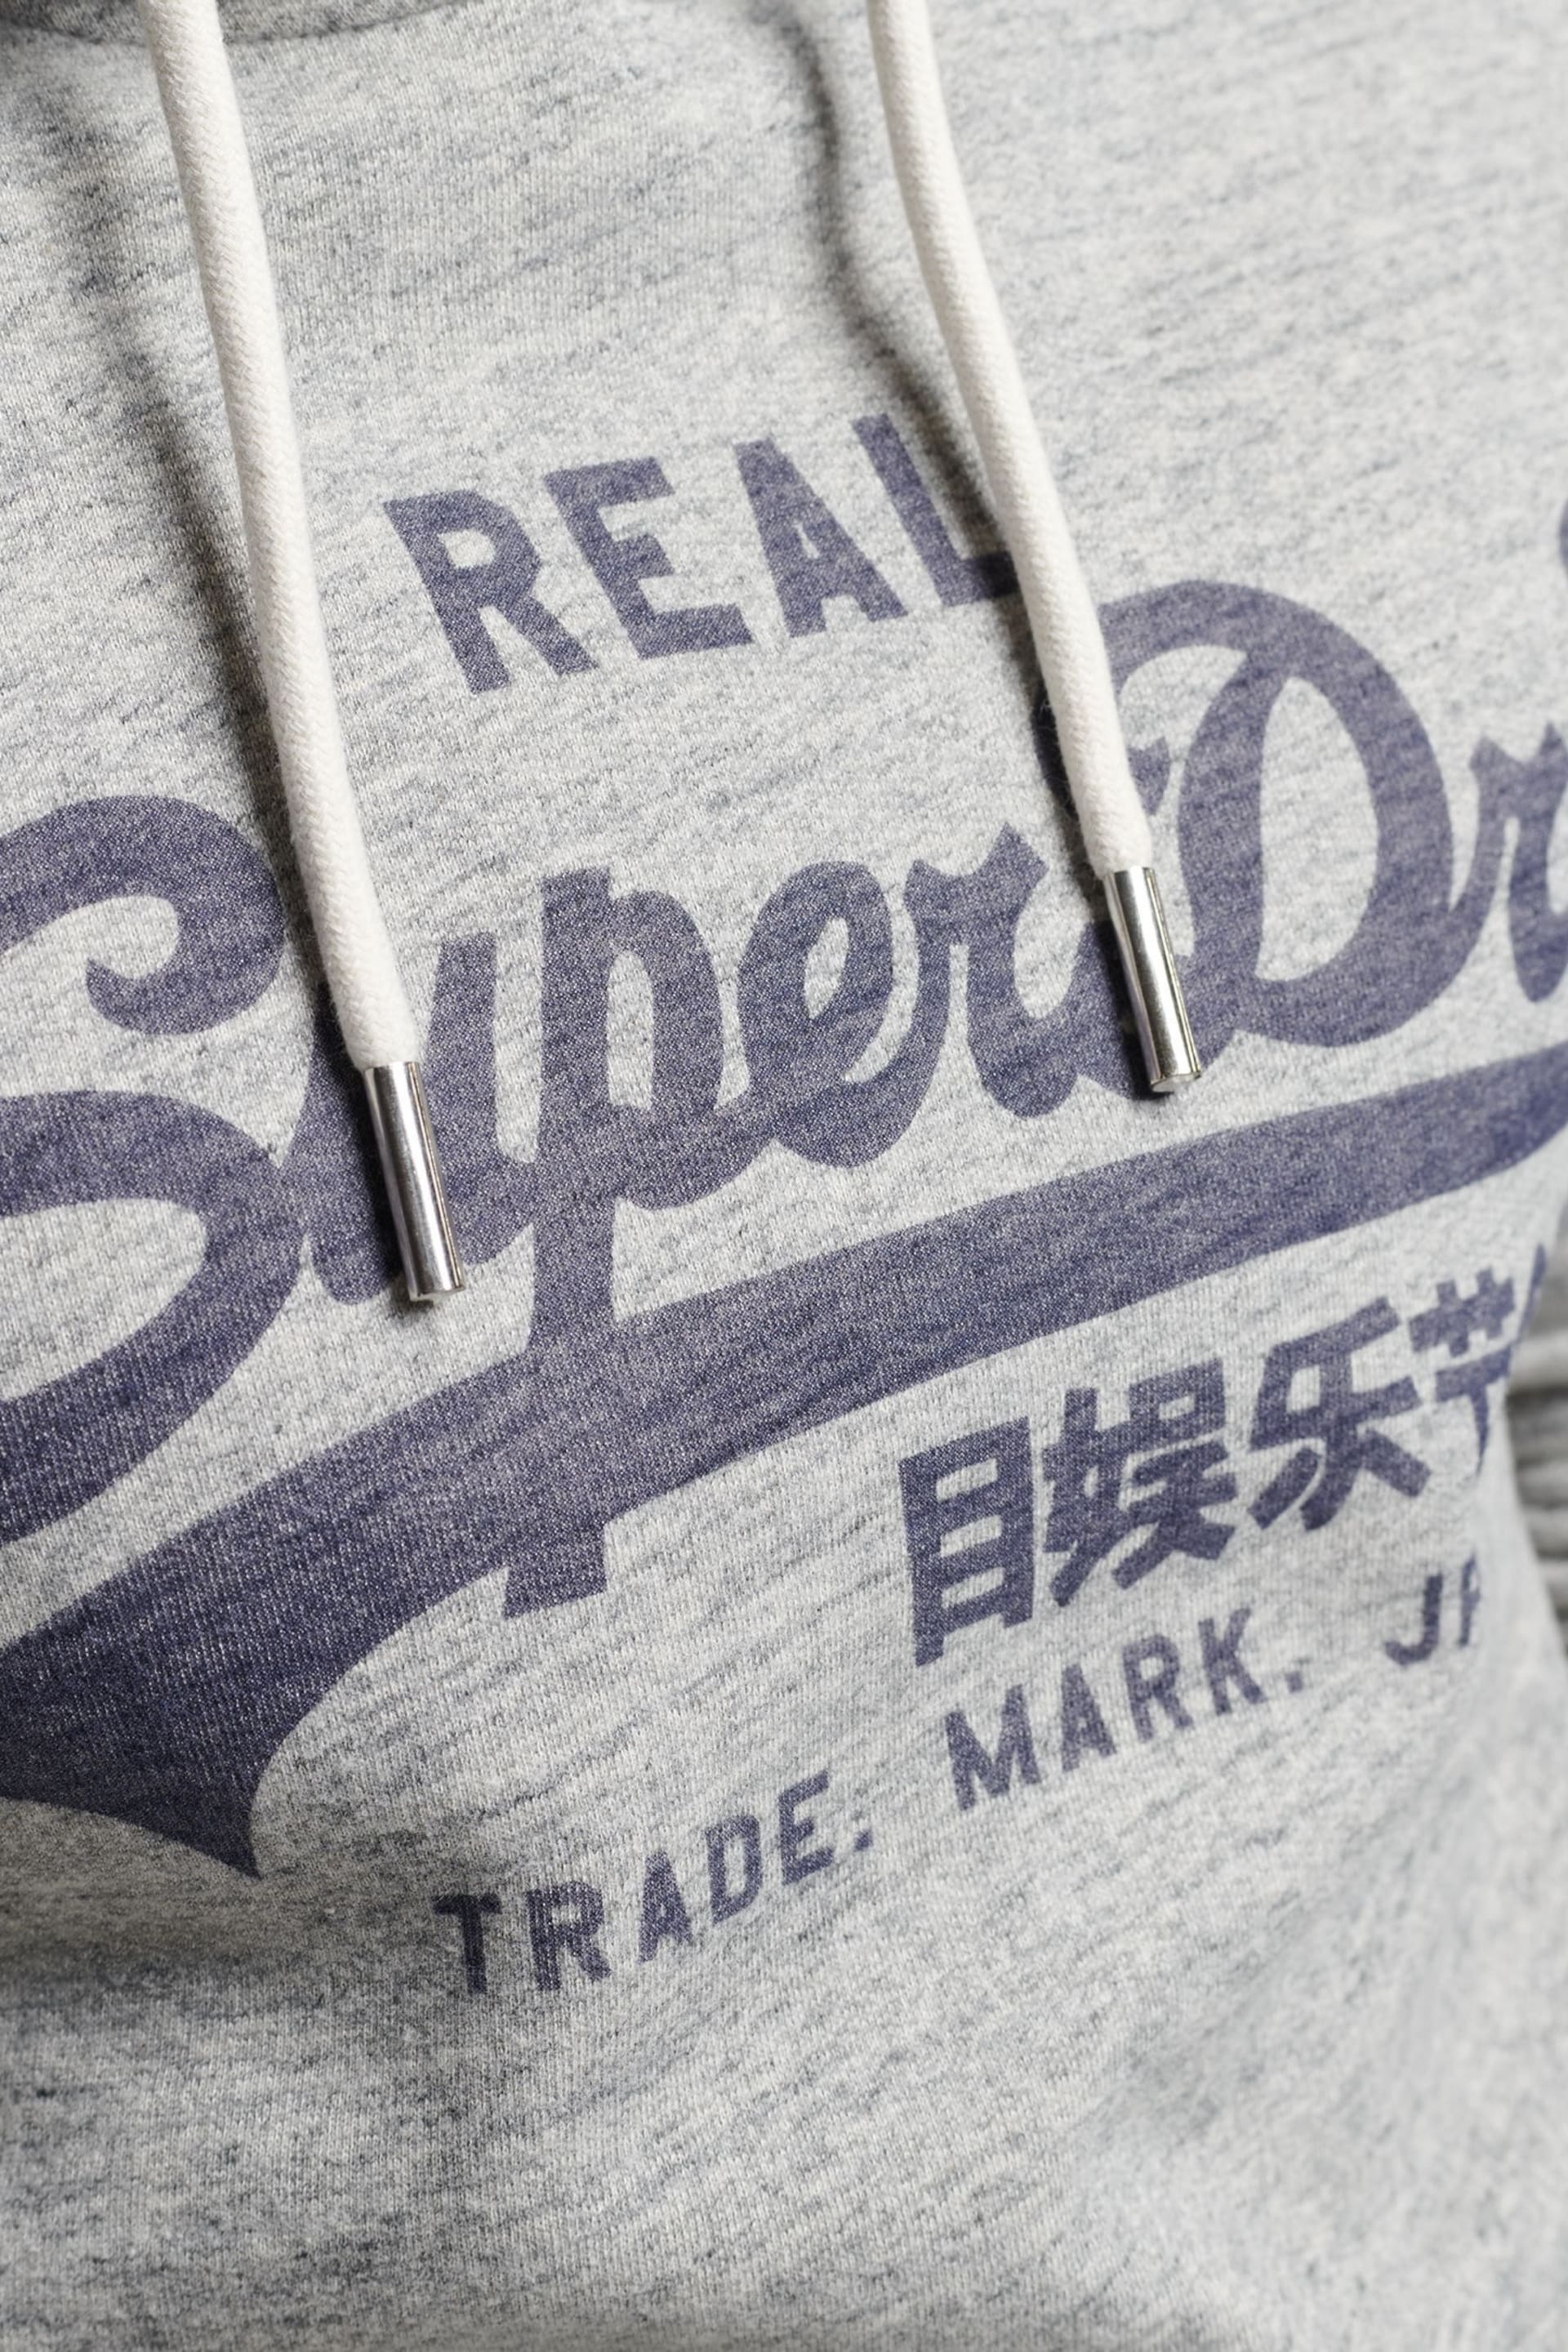 Superdry Authentic Grey Marl Vintage Logo Hoodie - Image 4 of 8